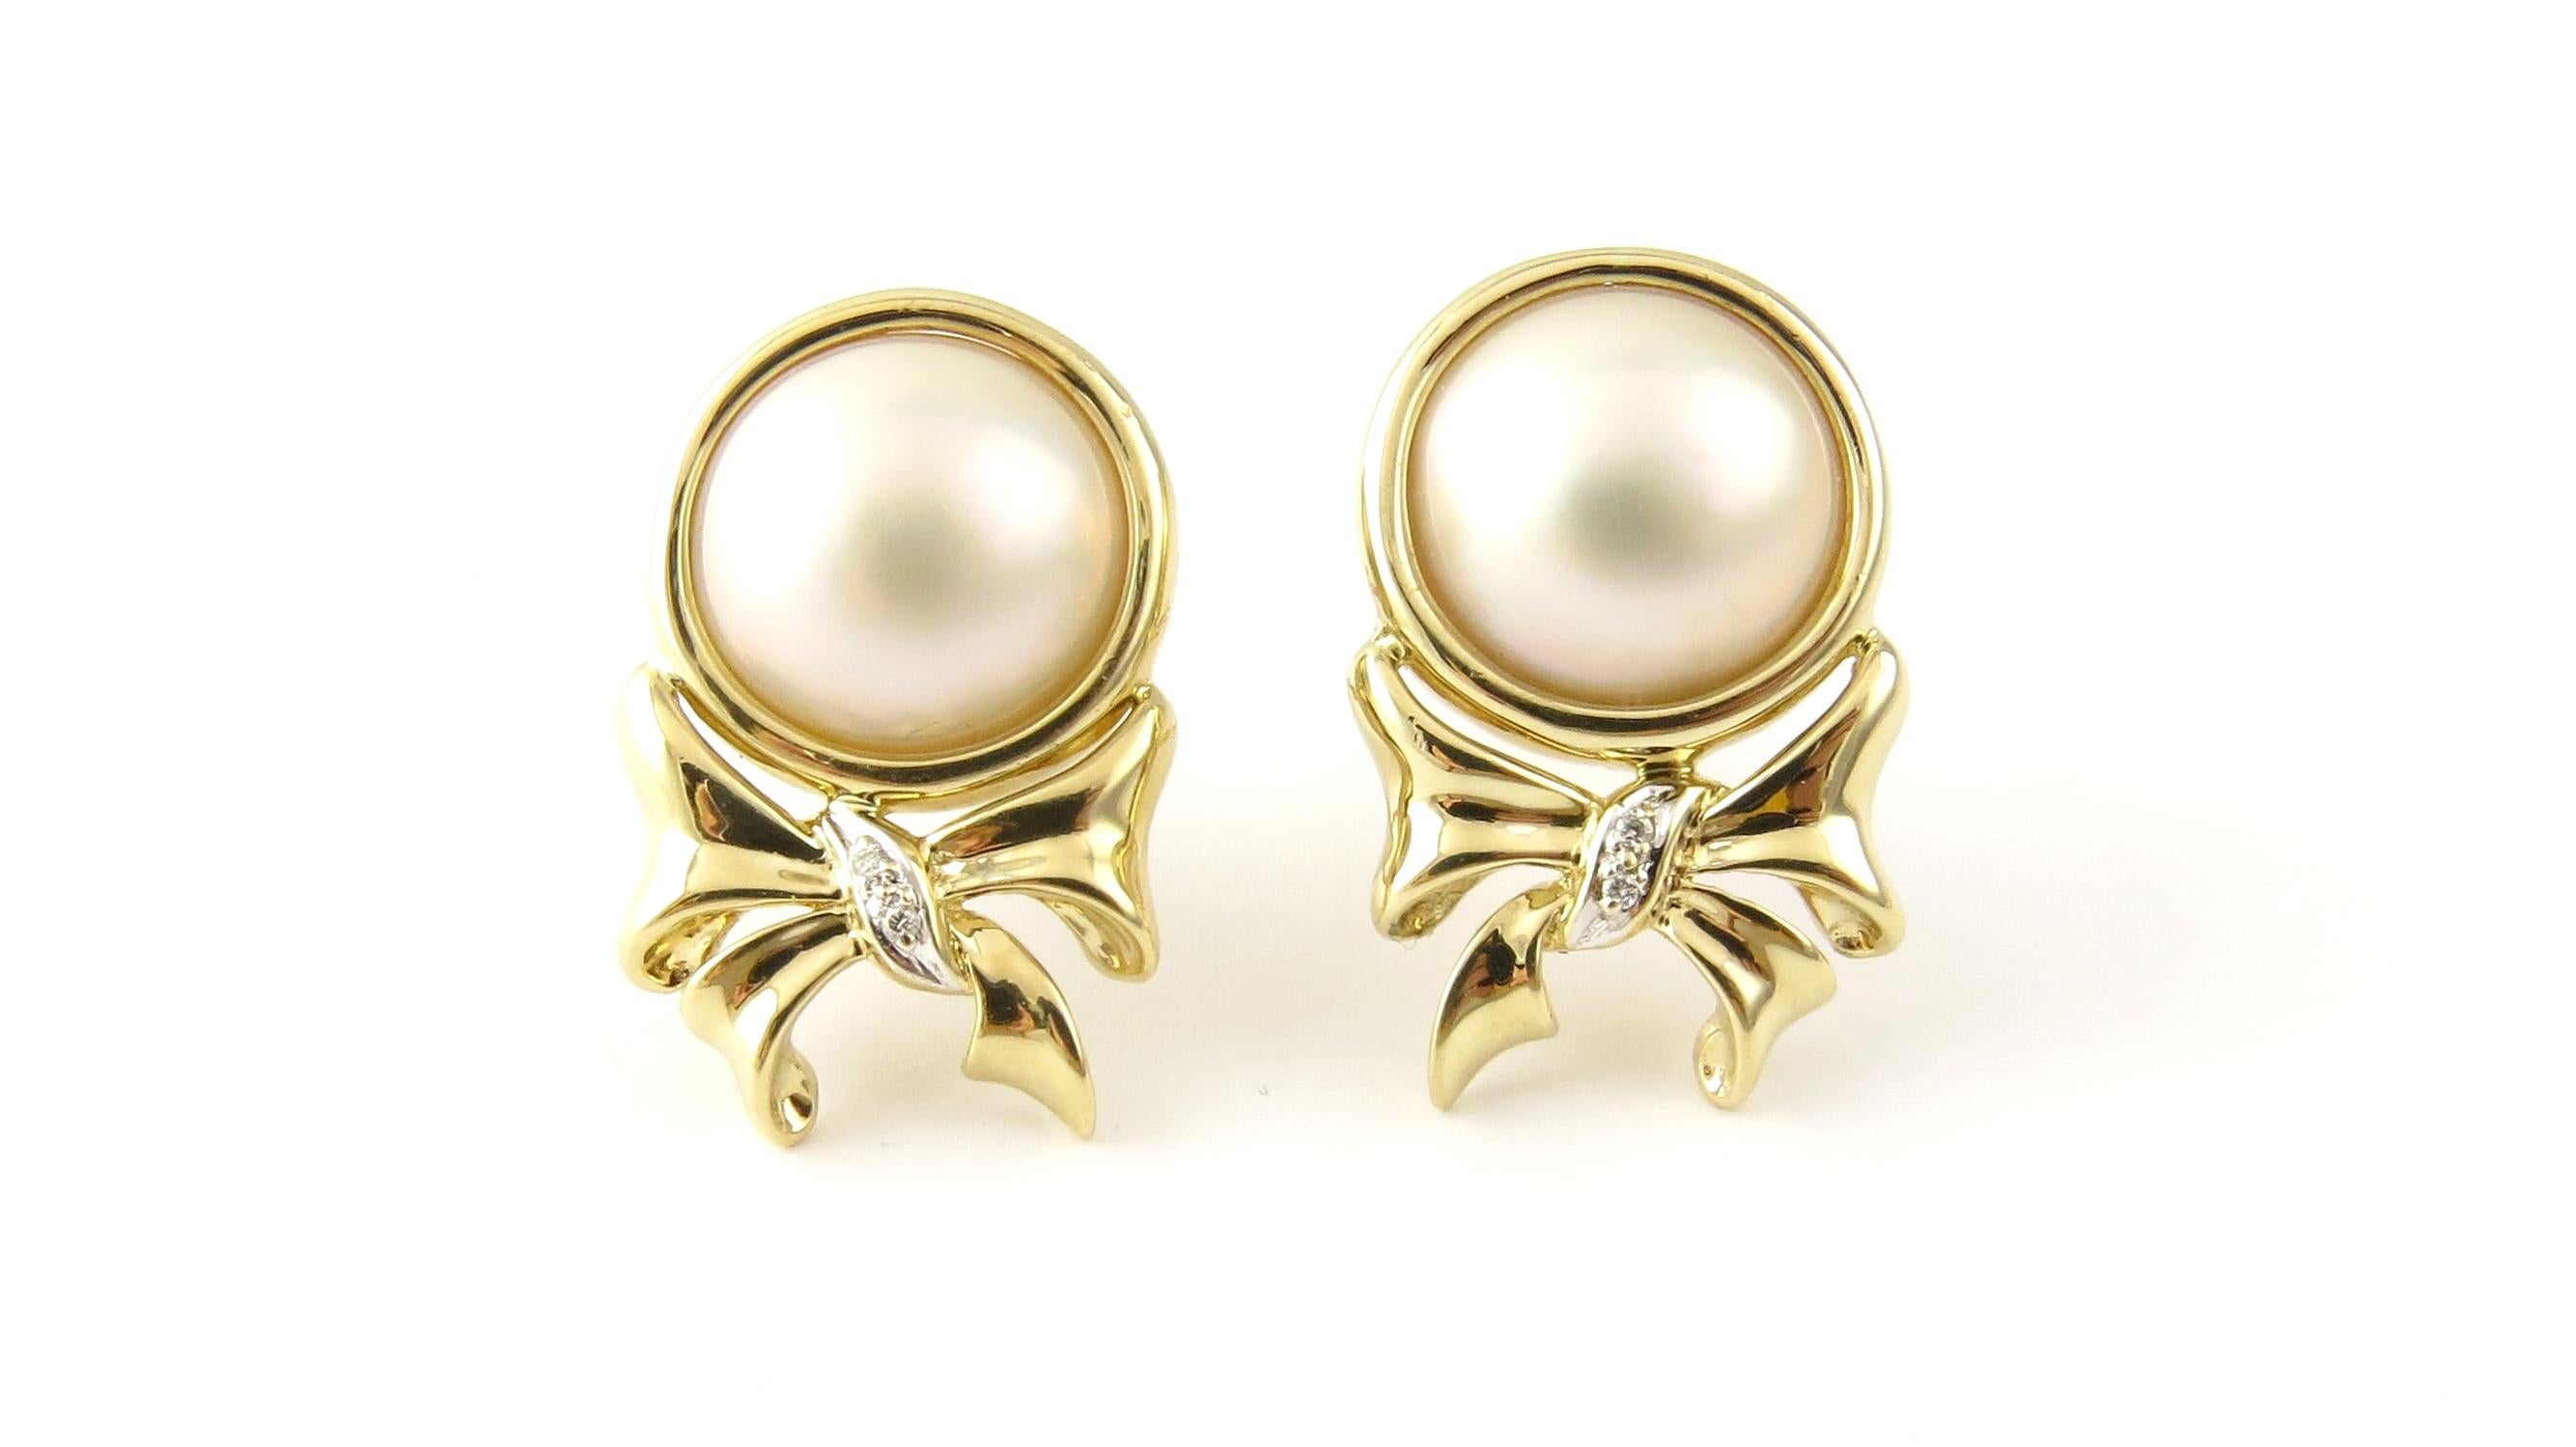 Vintage 14 Karat Gelbgold Perle und Diamant-Ohrringe

Diese atemberaubenden Ohrringe zum Anstecken enthalten jeweils eine runde Perle (12 mm), die in wunderschönes 14-karätiges Gelbgold eingefasst und mit zwei runden Diamanten im Brillantschliff